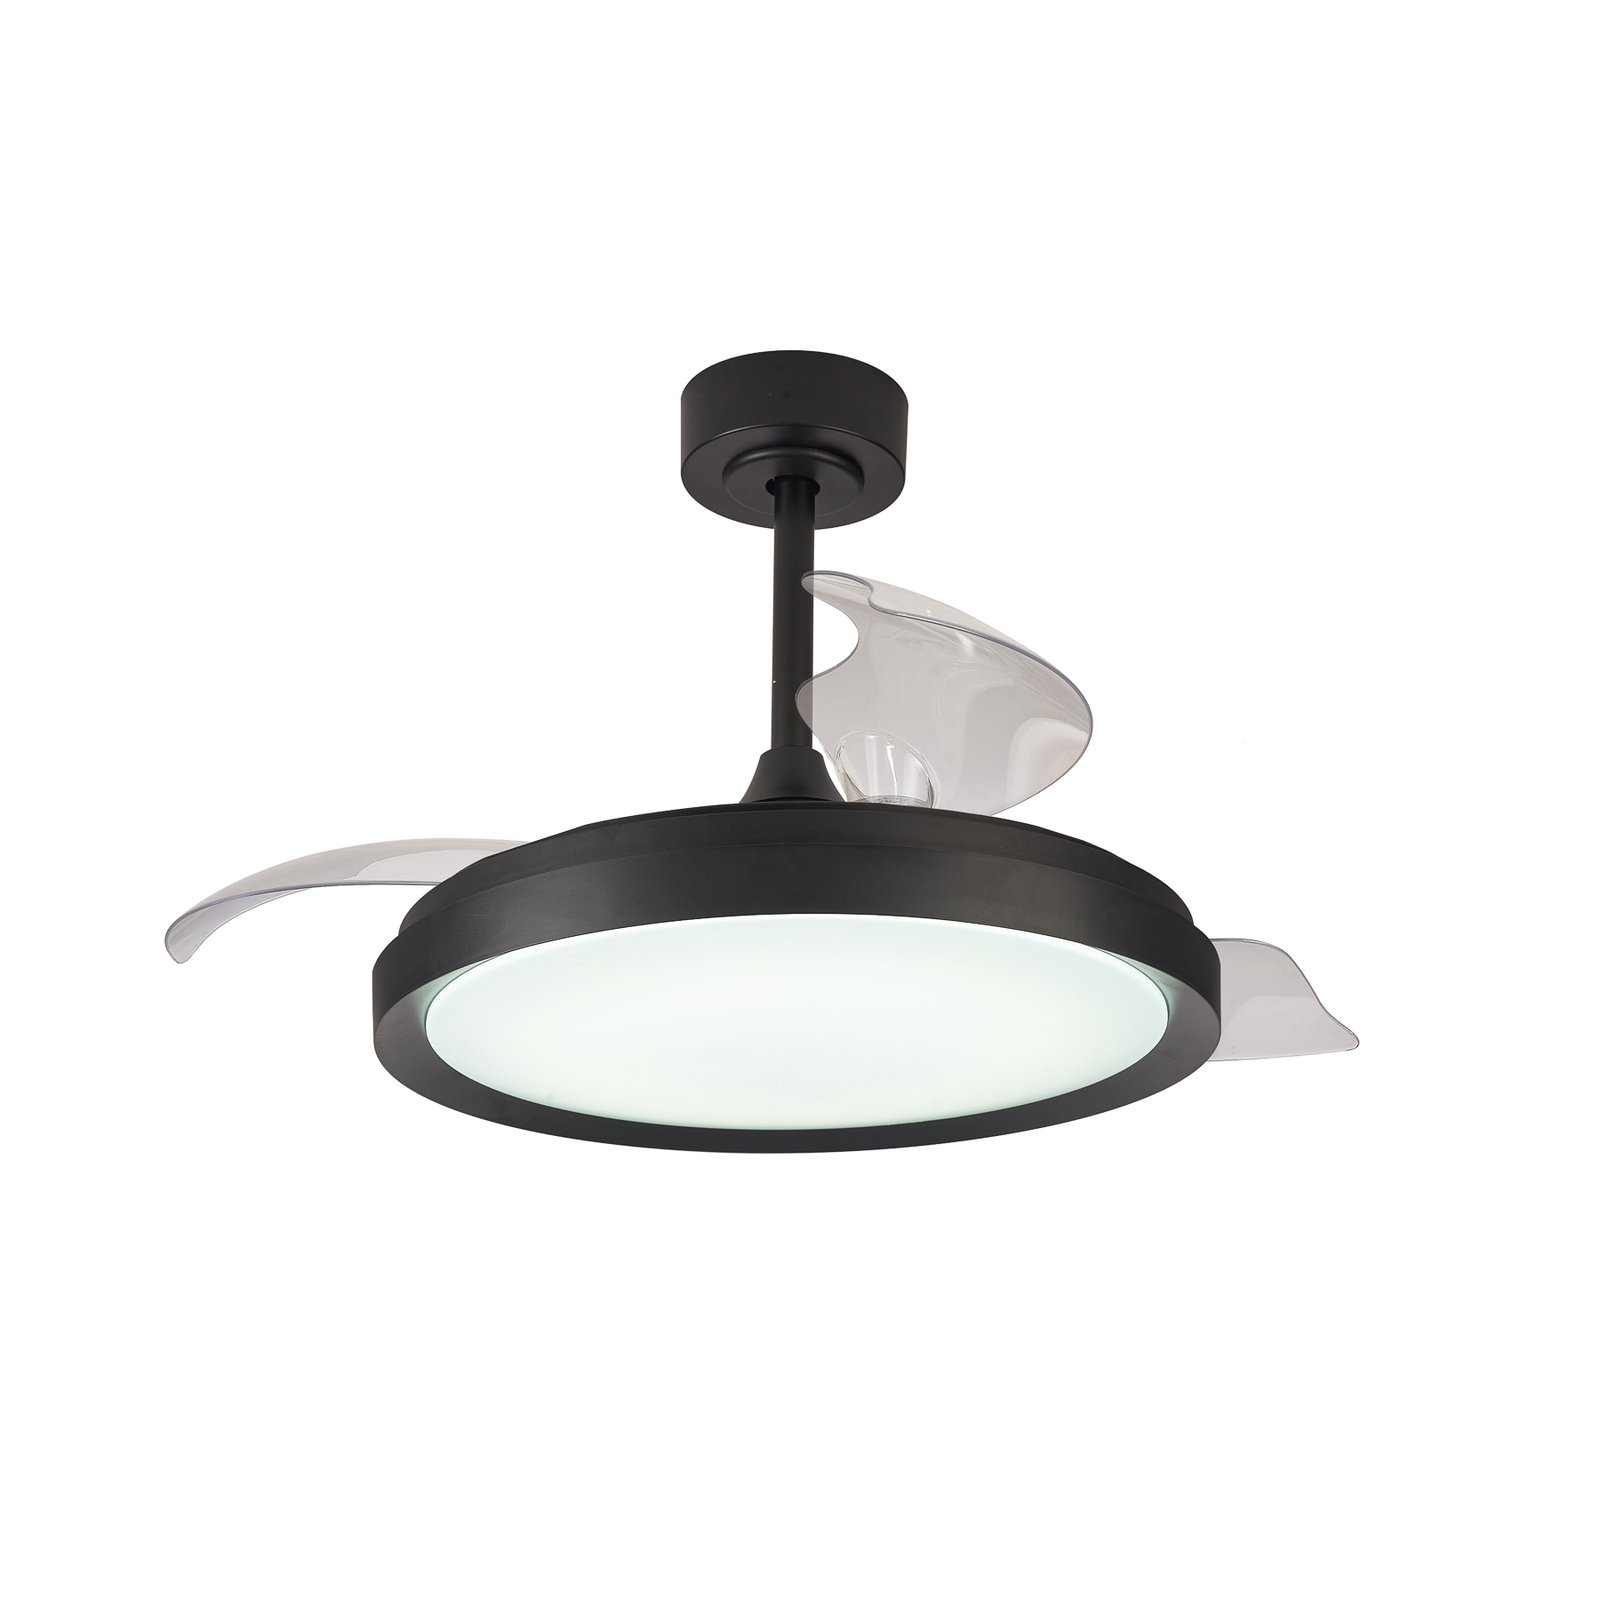 LED lubinis ventiliatorius "Mistral", juodas, nuolatinės srovės, tylus Ø